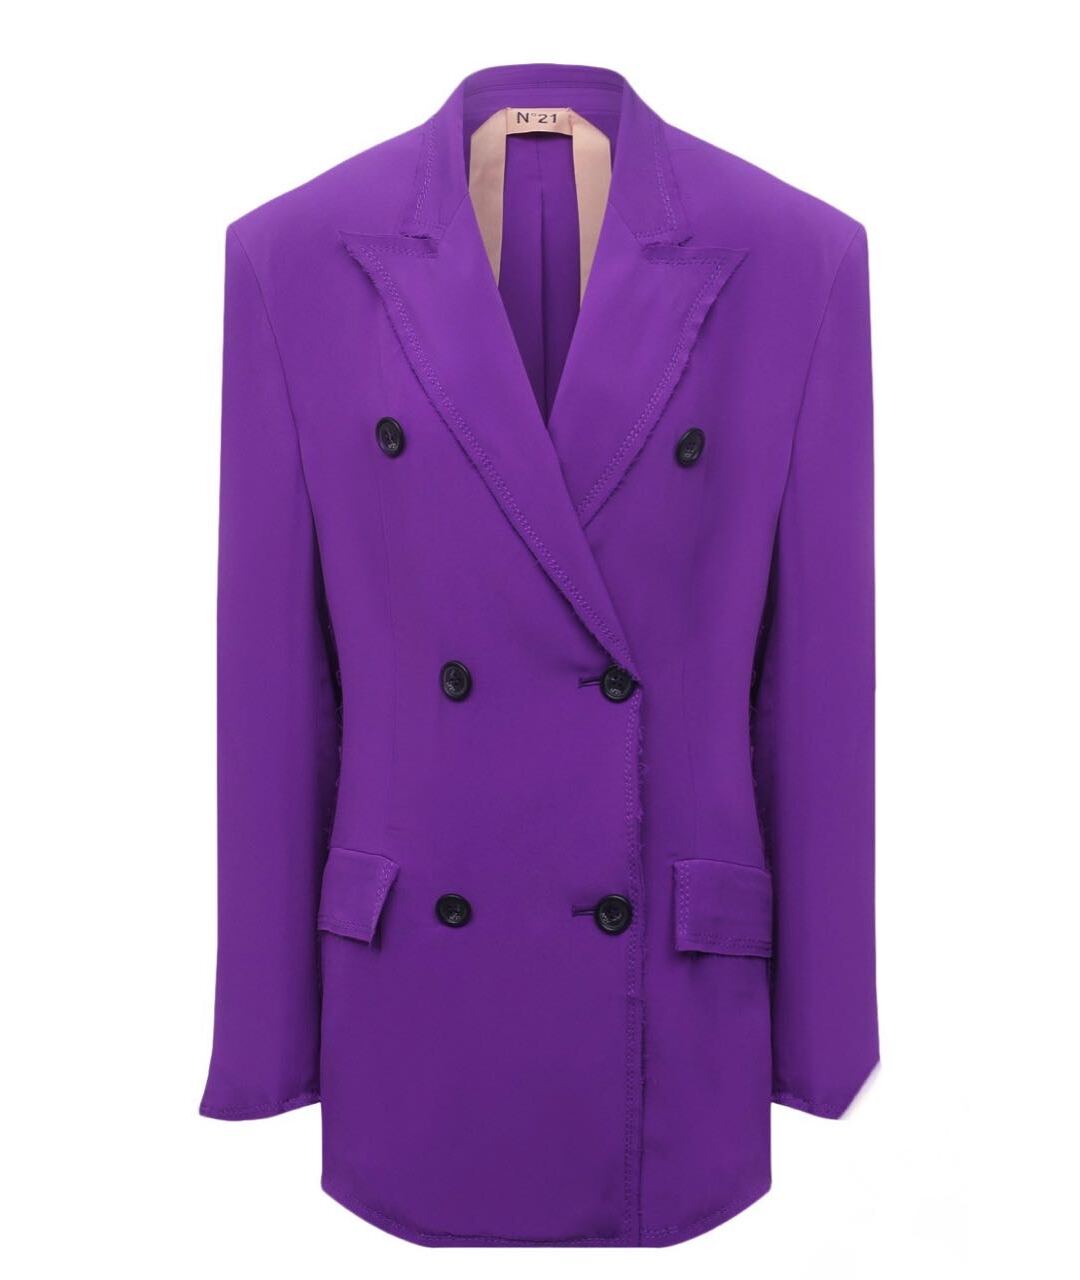 №21 Фиолетовый ацетатный костюм с брюками, фото 1